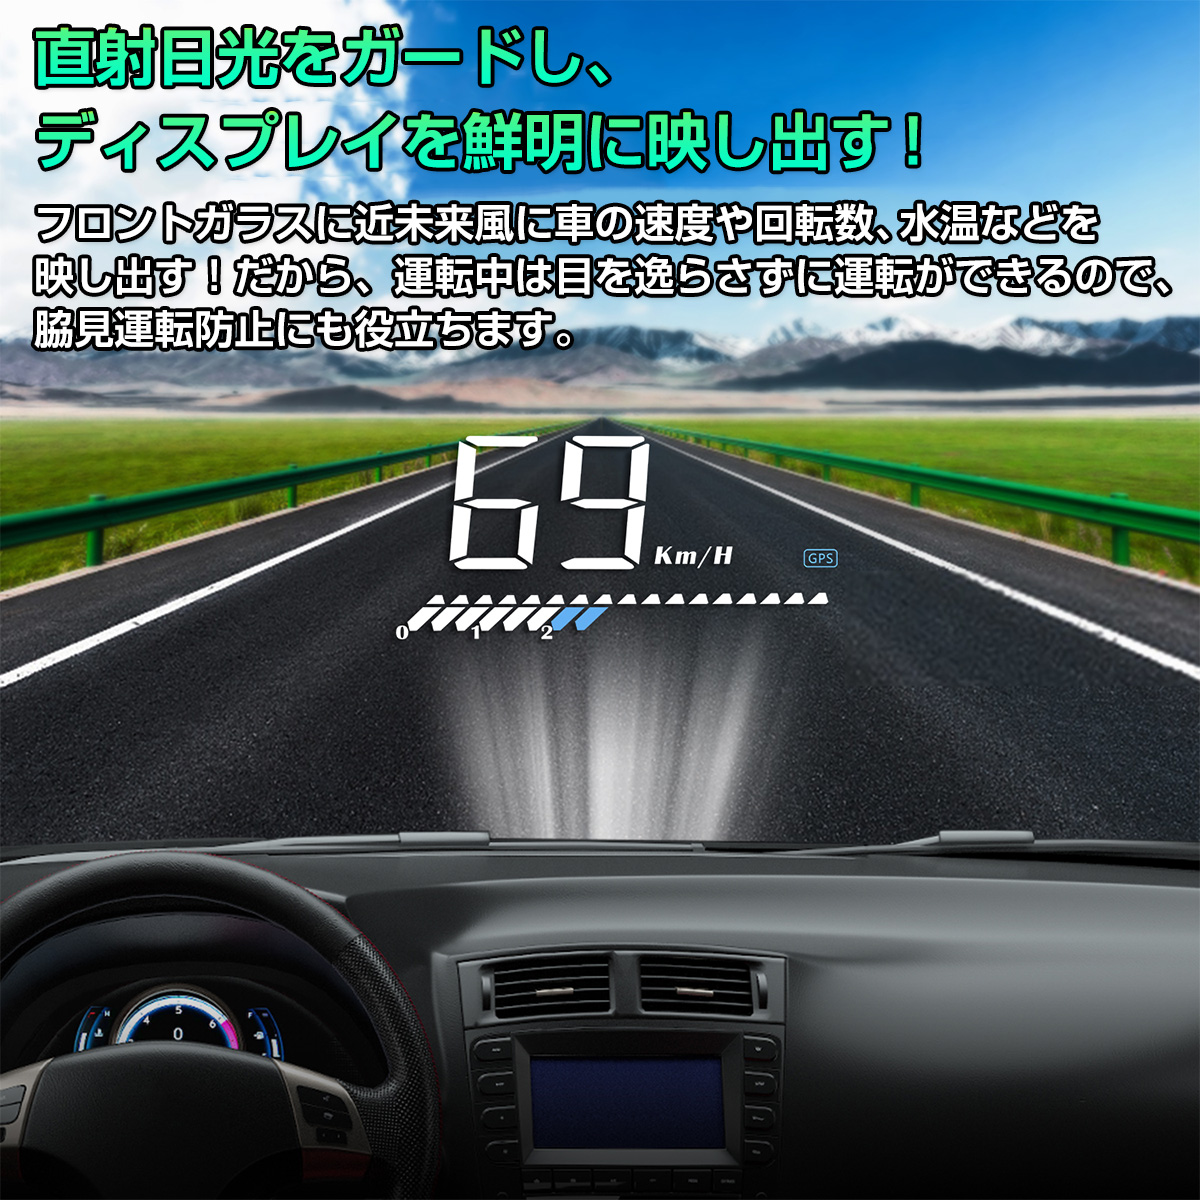 7125円 【50%OFF!】 Yctzeカーヘッドアップディスプレイ インテリジェントカーHUD GPS信号速度計オーバースピード警告走行距離測定車 トラック オフロードの高度アラーム電圧監視